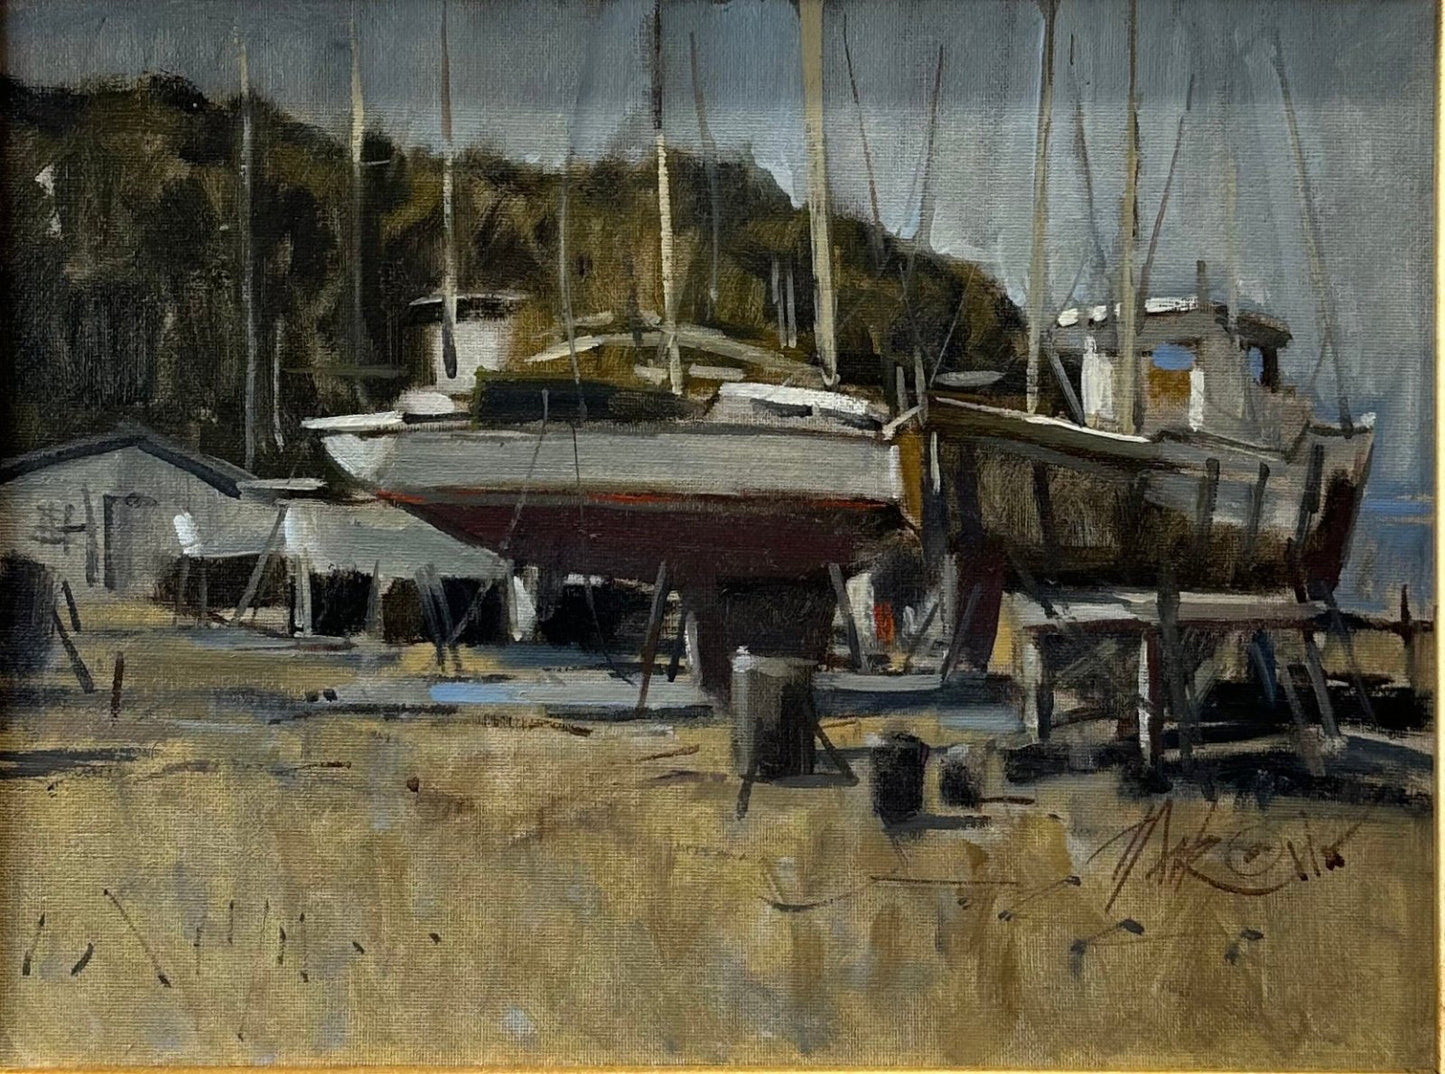 Boatyard by George Pate at LePrince Galleries